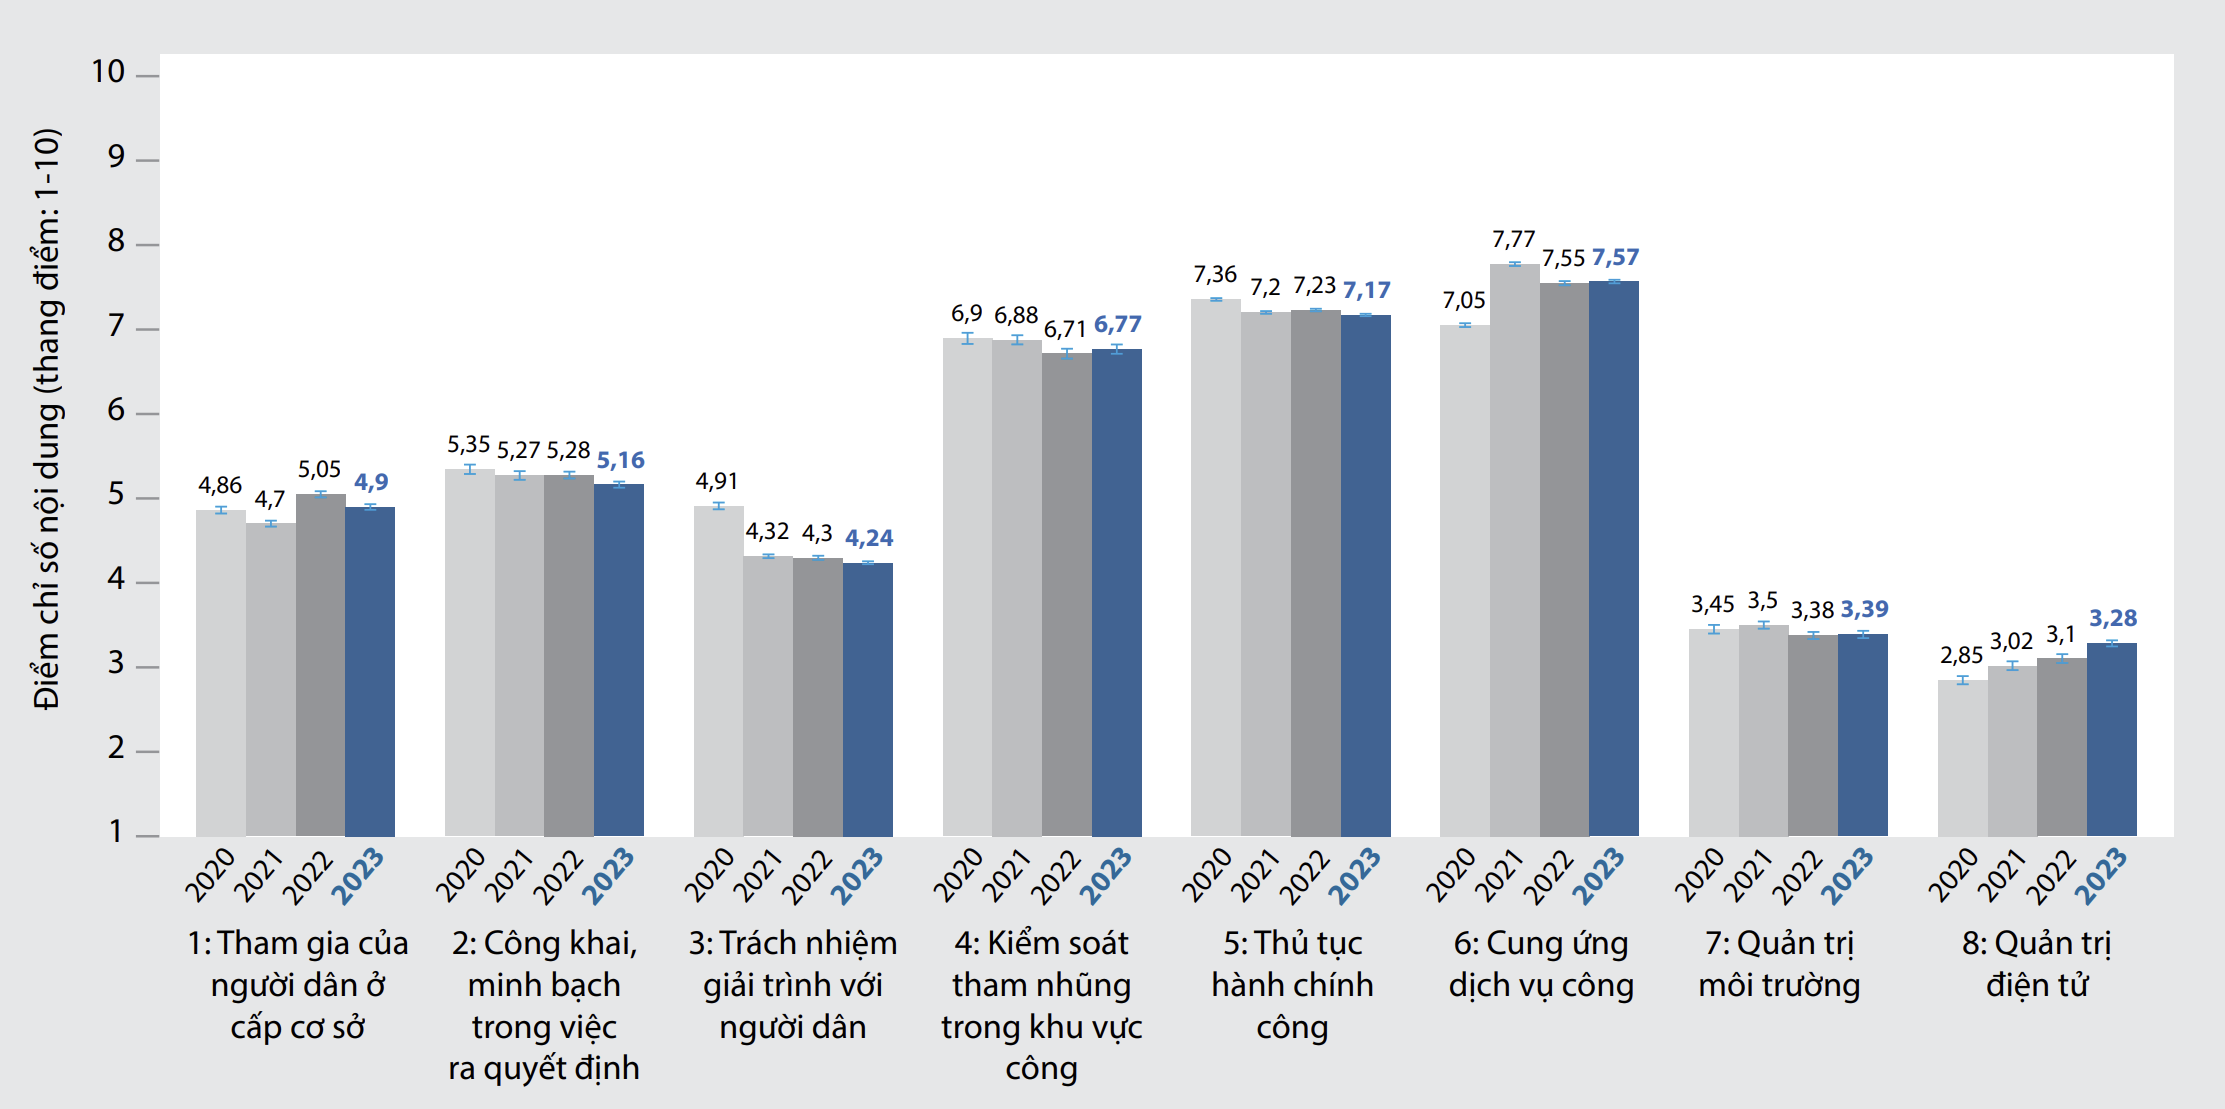 Xu thế biến đổi ở tám chỉ số nội dung PAPI từ 2020 đến 2023